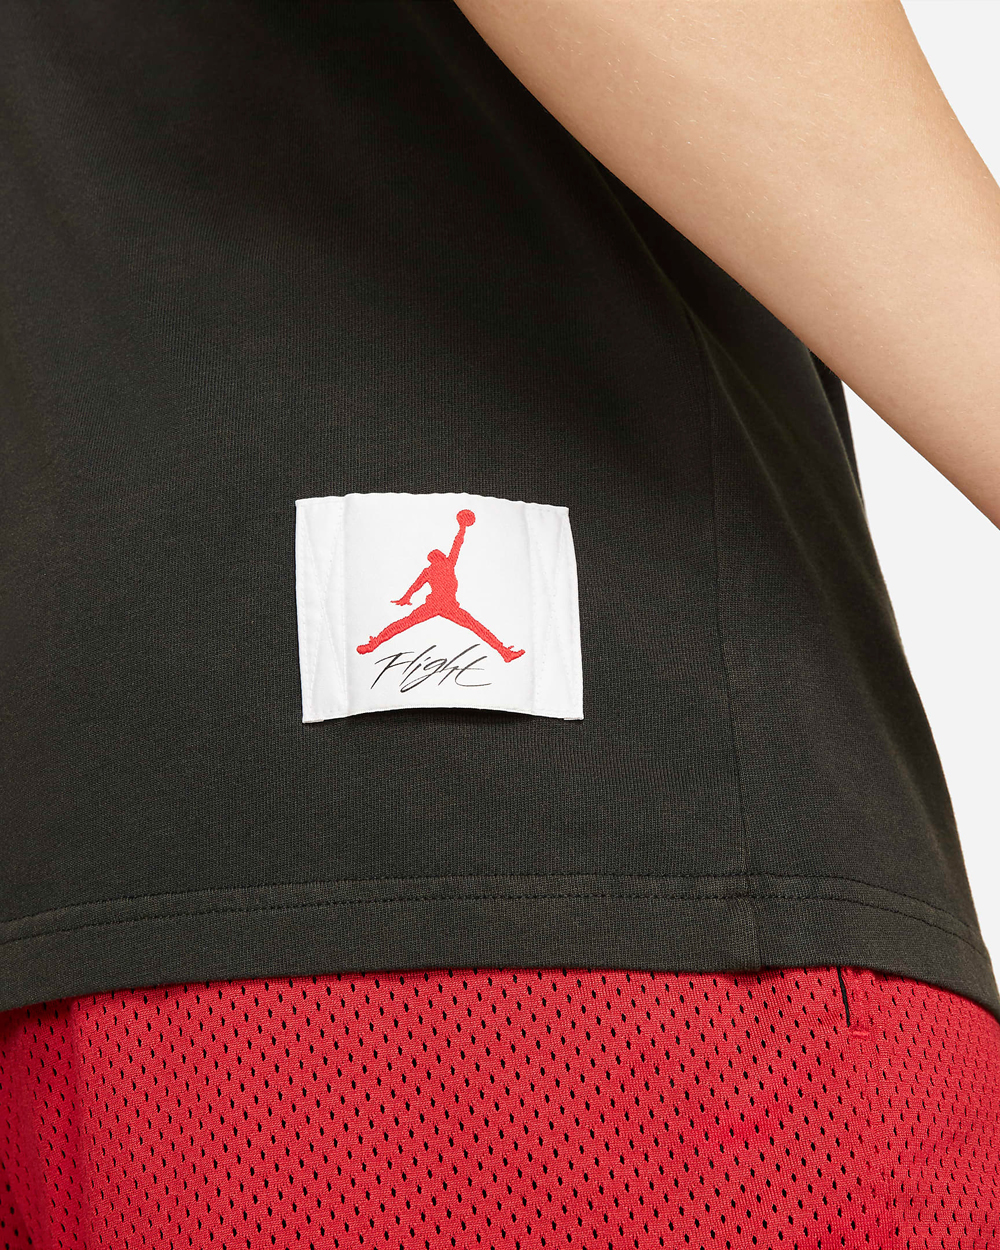 jordan-flight-graphic-shirt-black-red-grey-summer-2021-4